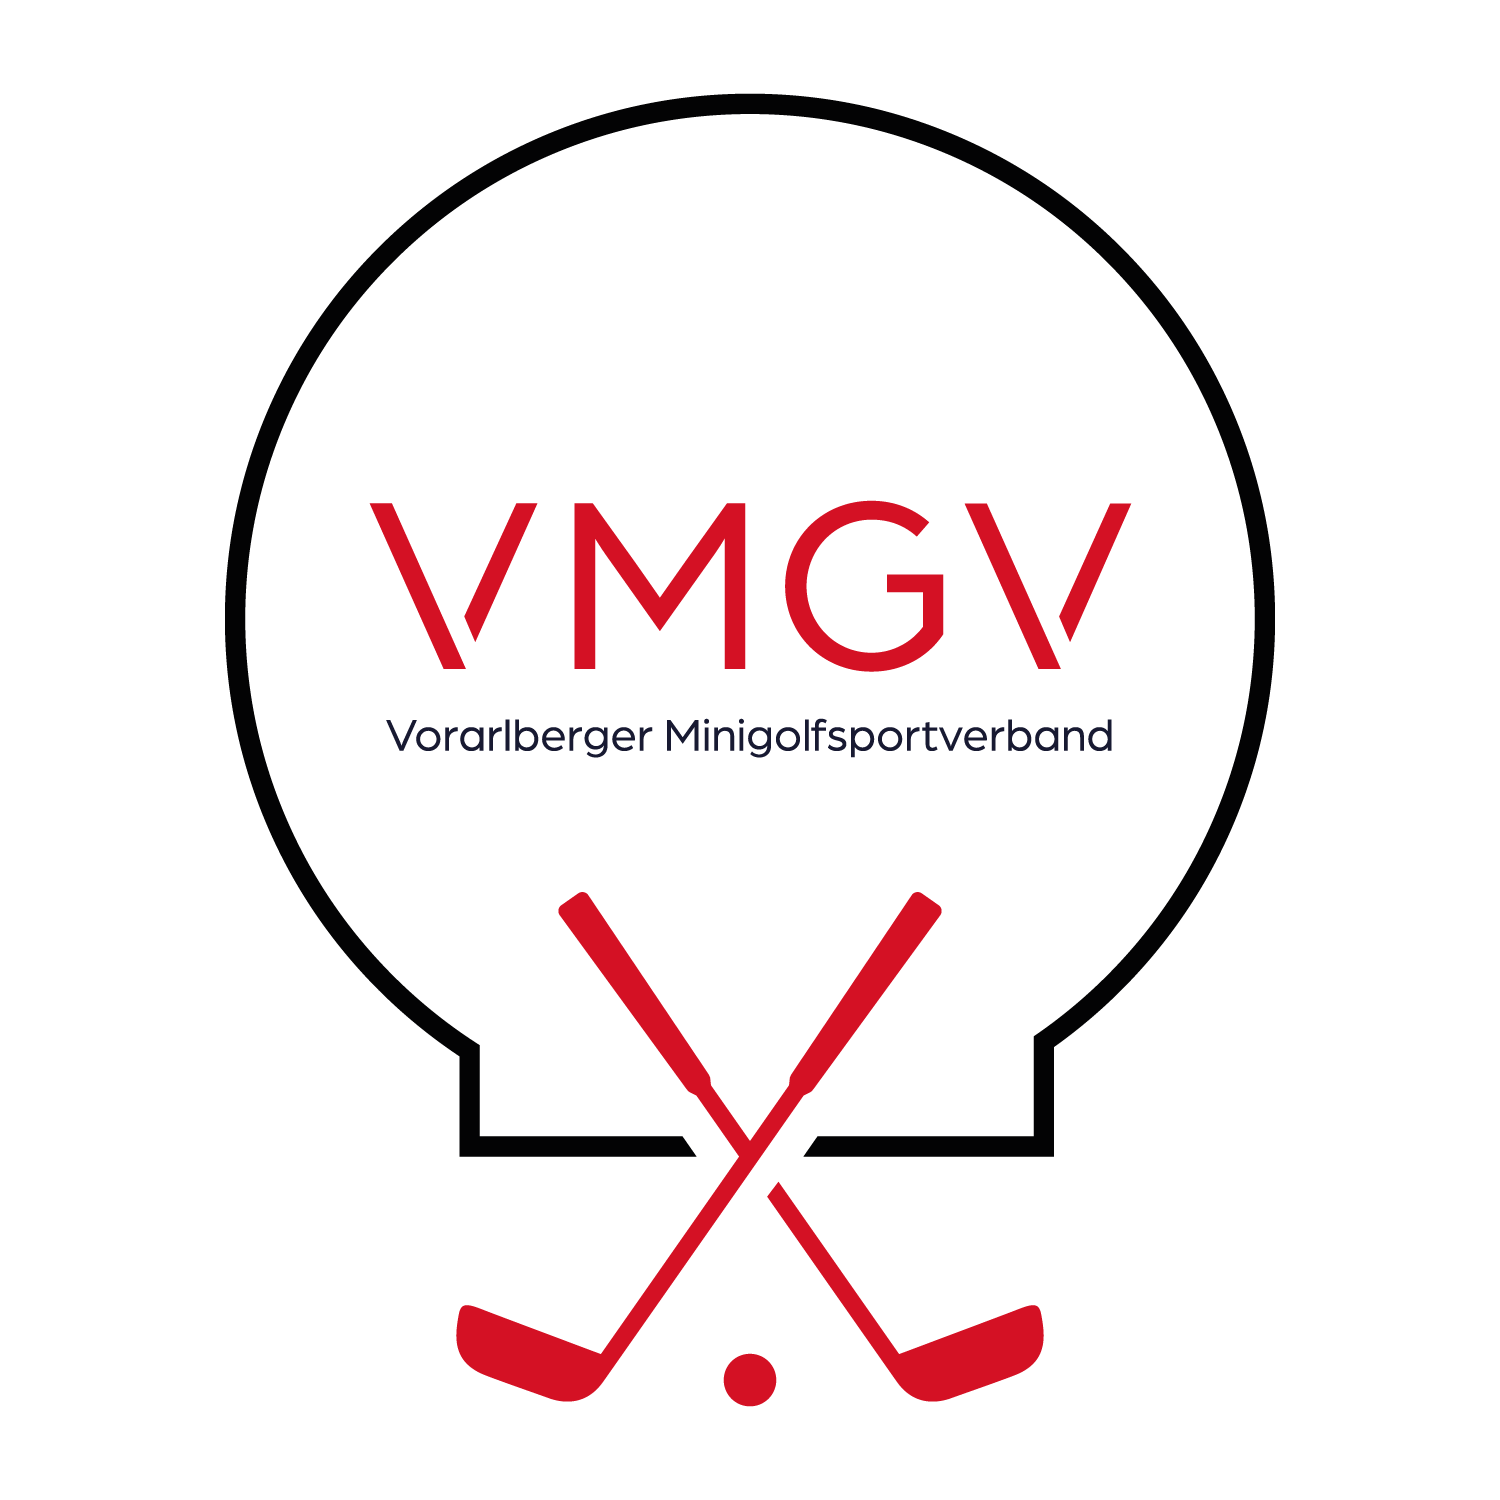 VMGV